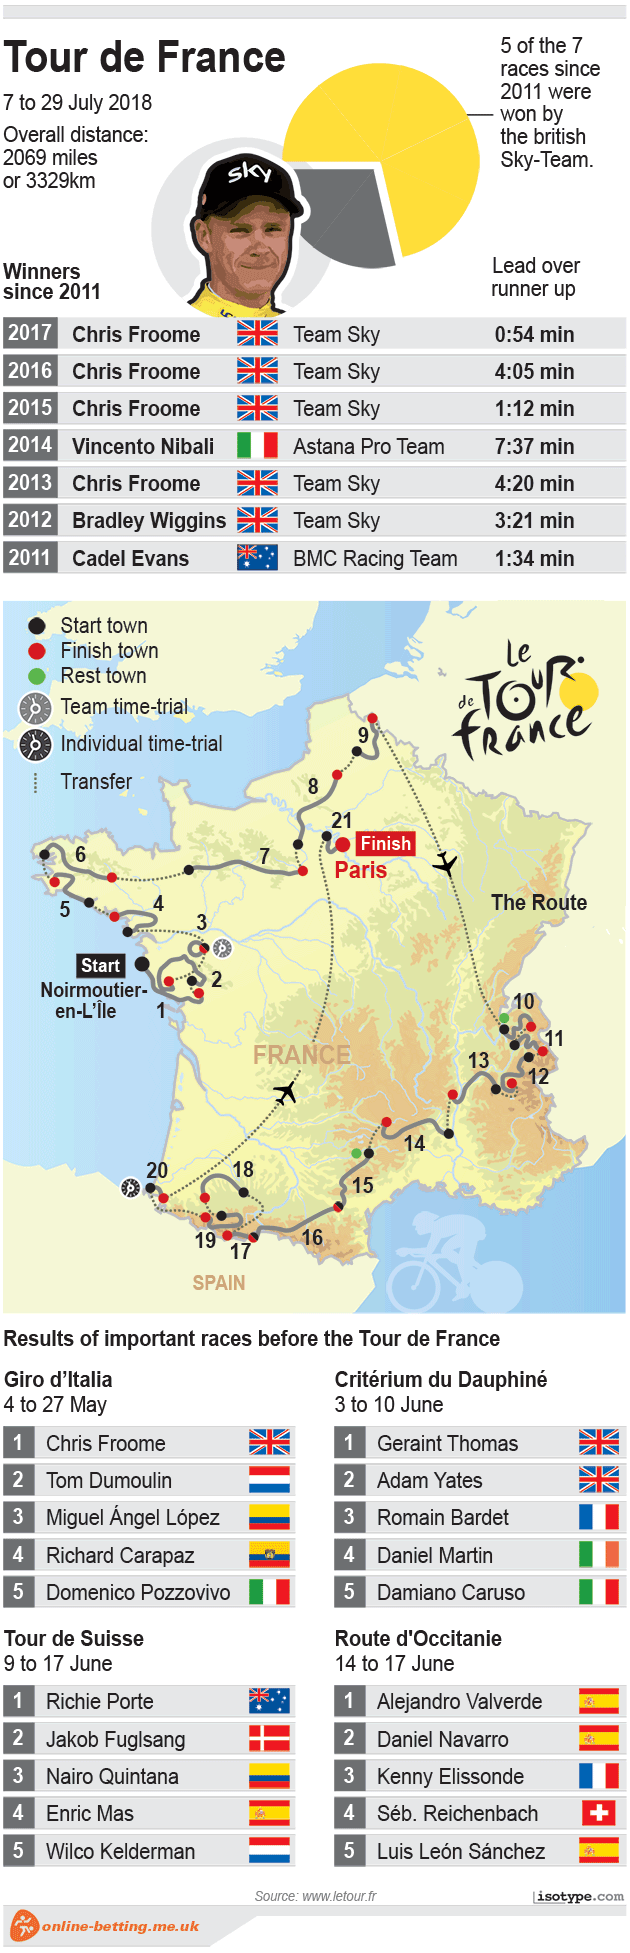 Tour de France 2018 Infographic